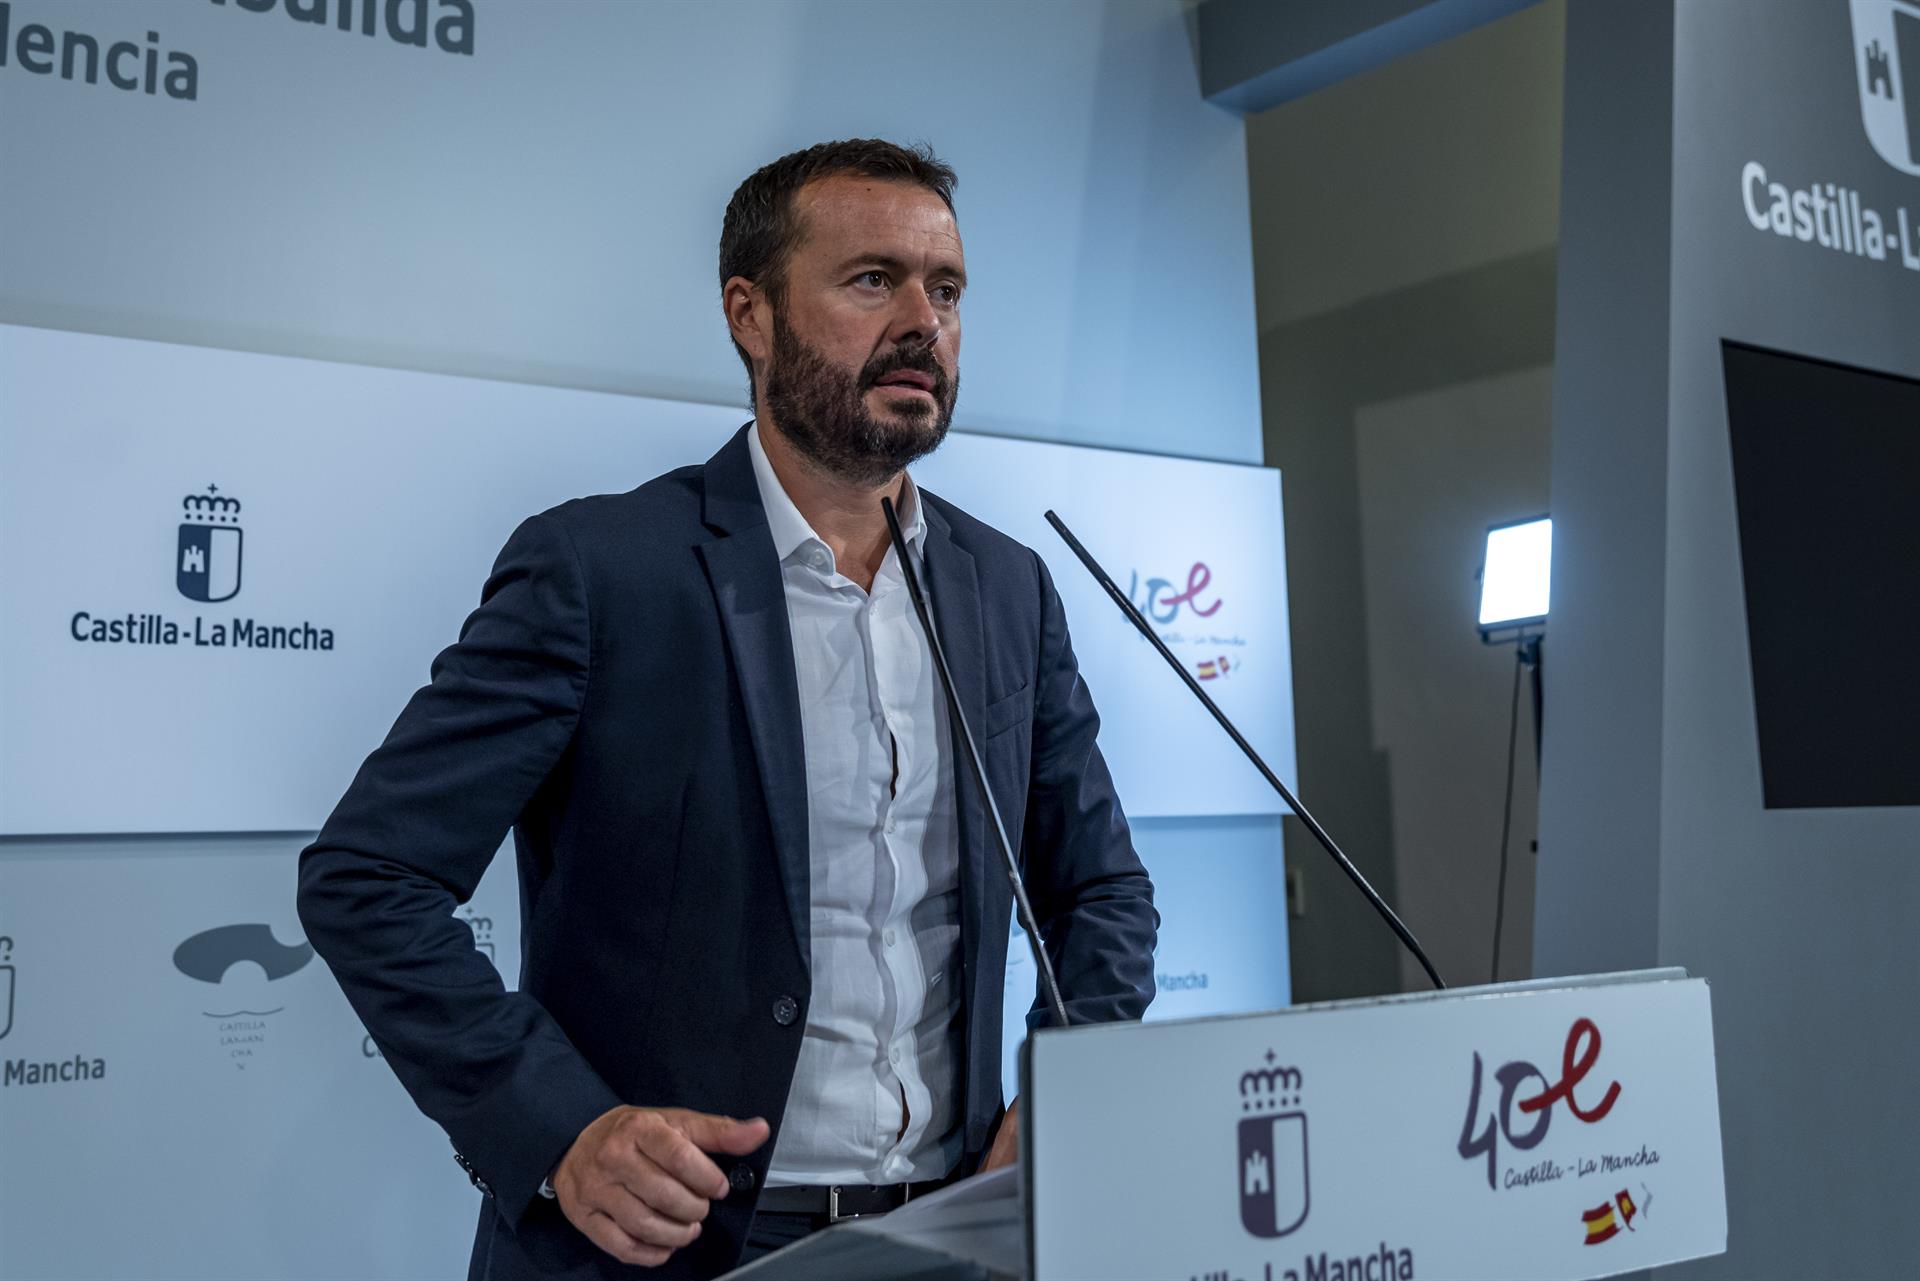 El consejero de Desarrollo Sostenible, José Luis Escudero, informa de acuerdos del Consejo de Gobierno de Castilla-La Mancha relacionados con su departamento. EFE/Ismael Herrero